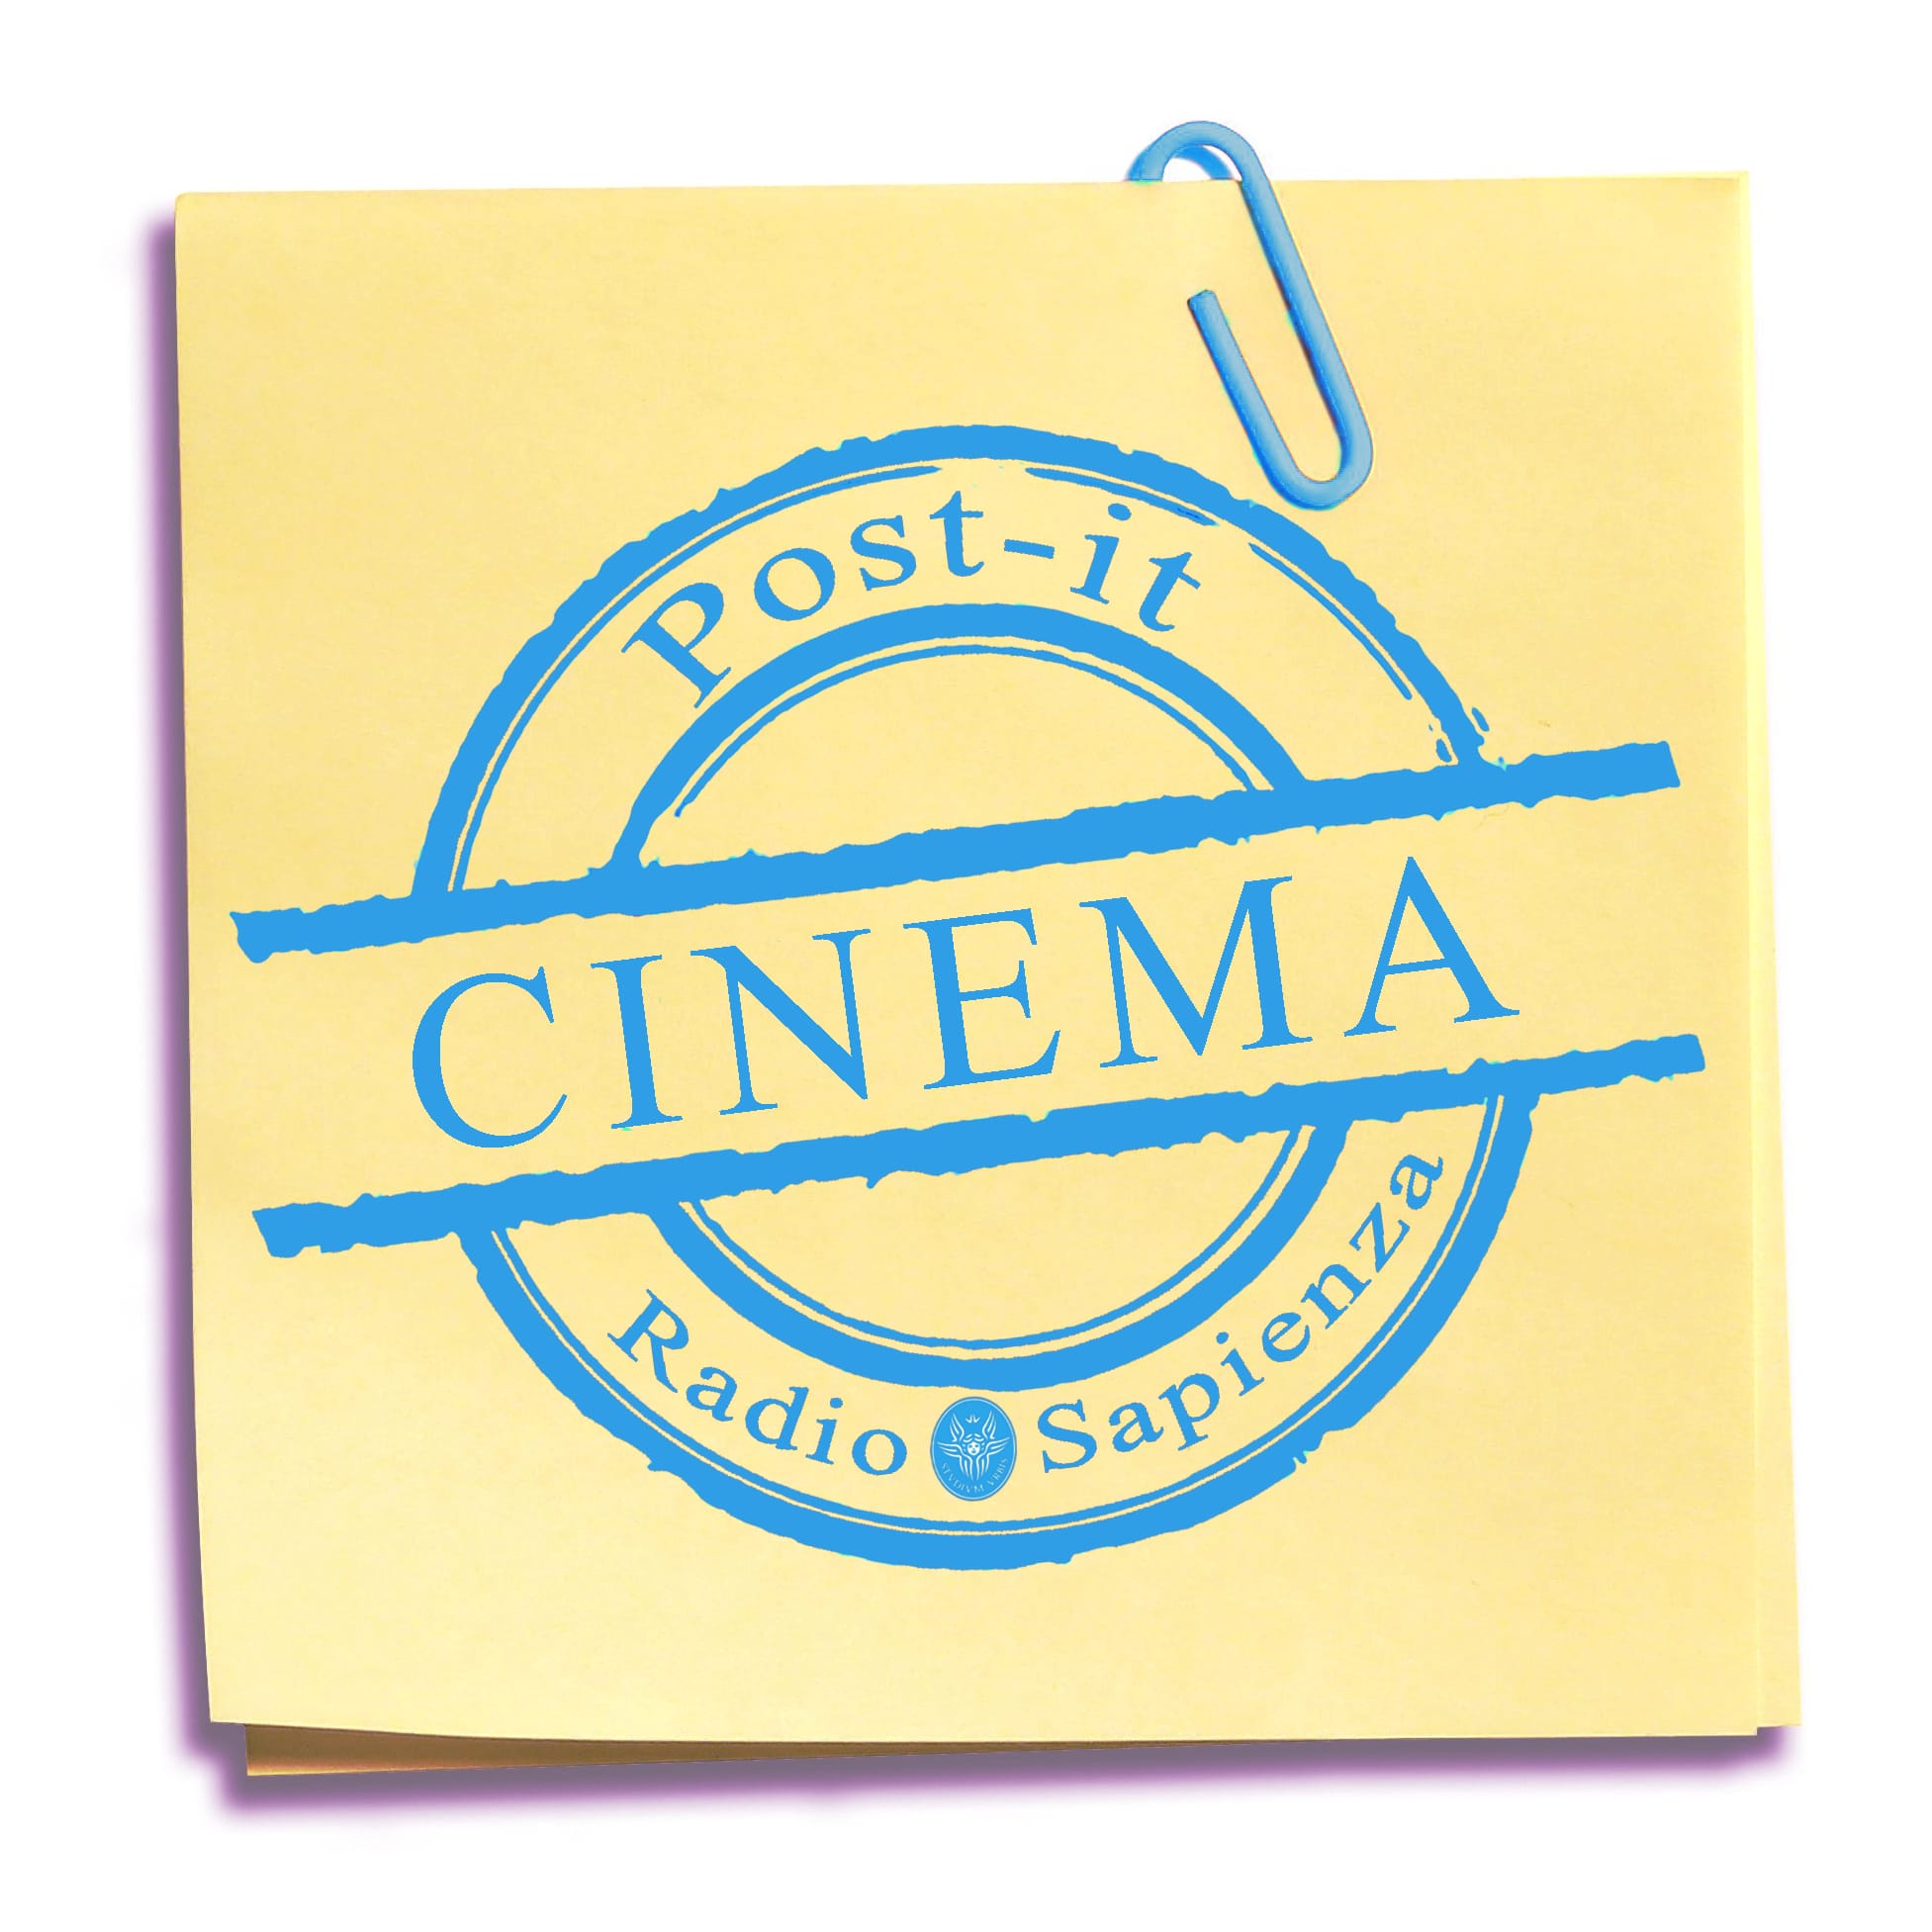 Post-it Cinema – 12 Maggio